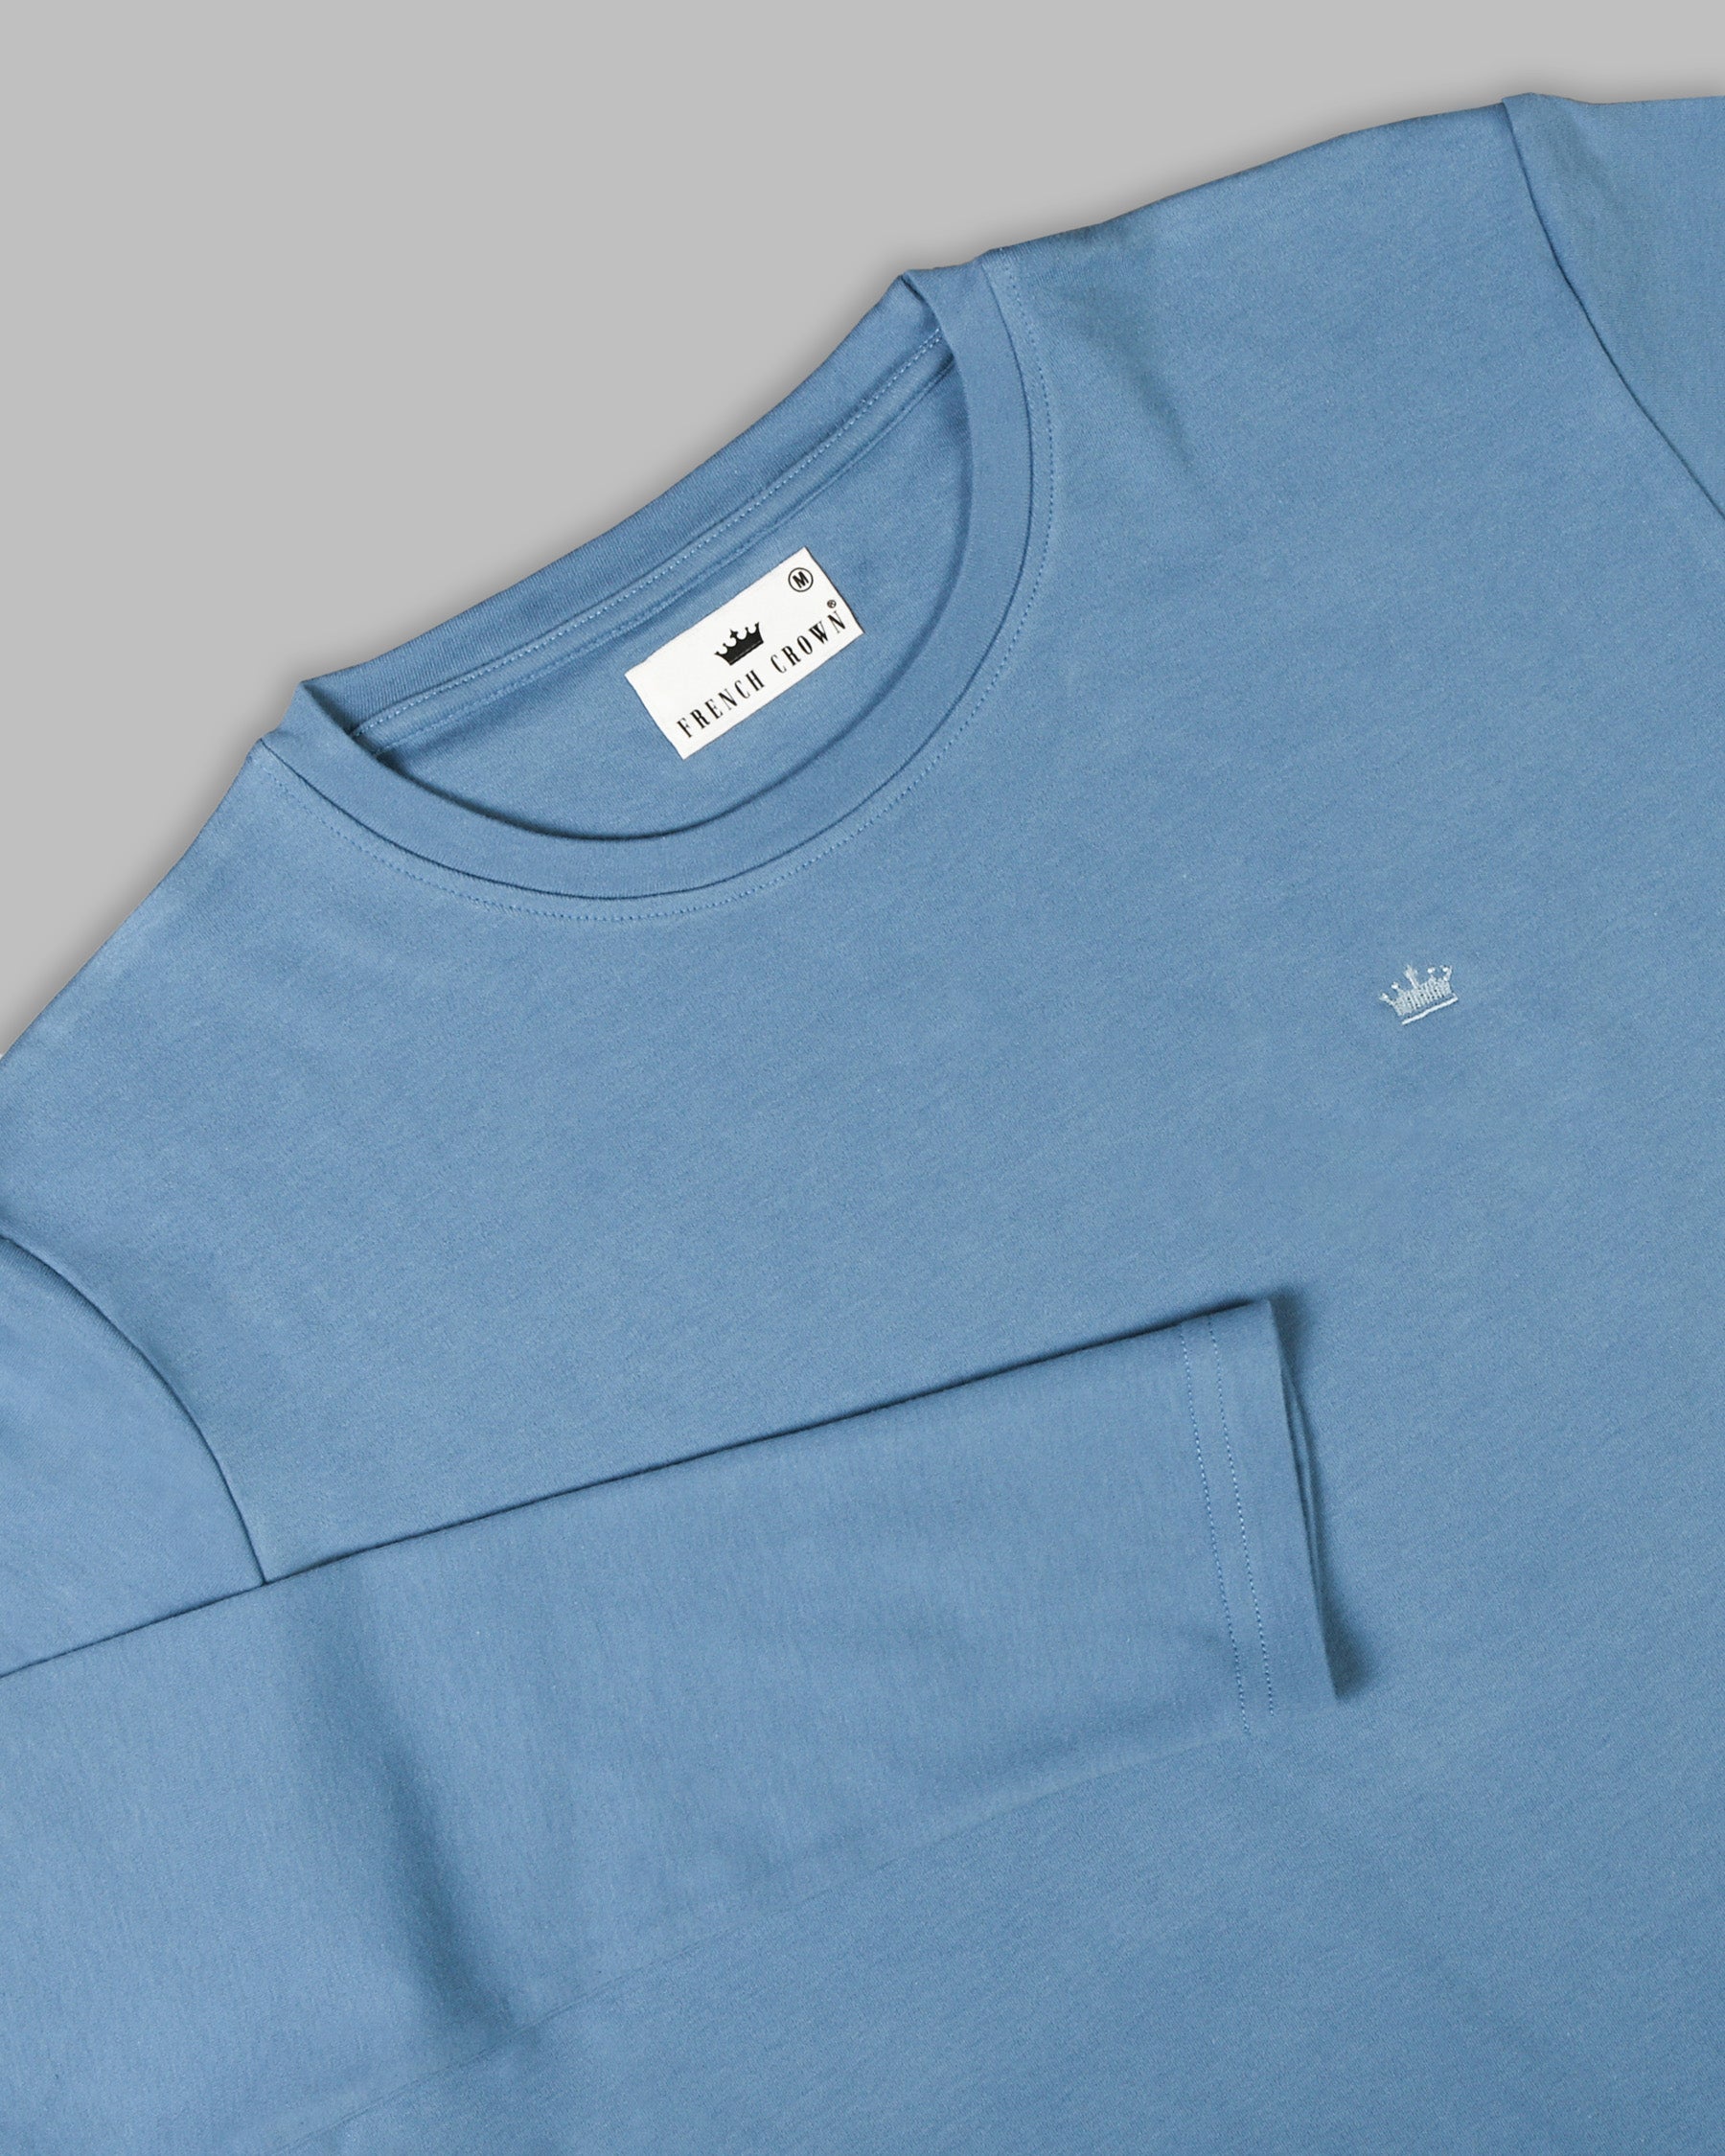 Cornflower Blue Full-Sleeve Super soft Organic Cotton Jersey T-shirt TS116-M, TS116-L, TS116-S, TS116-XL, TS116-XXL